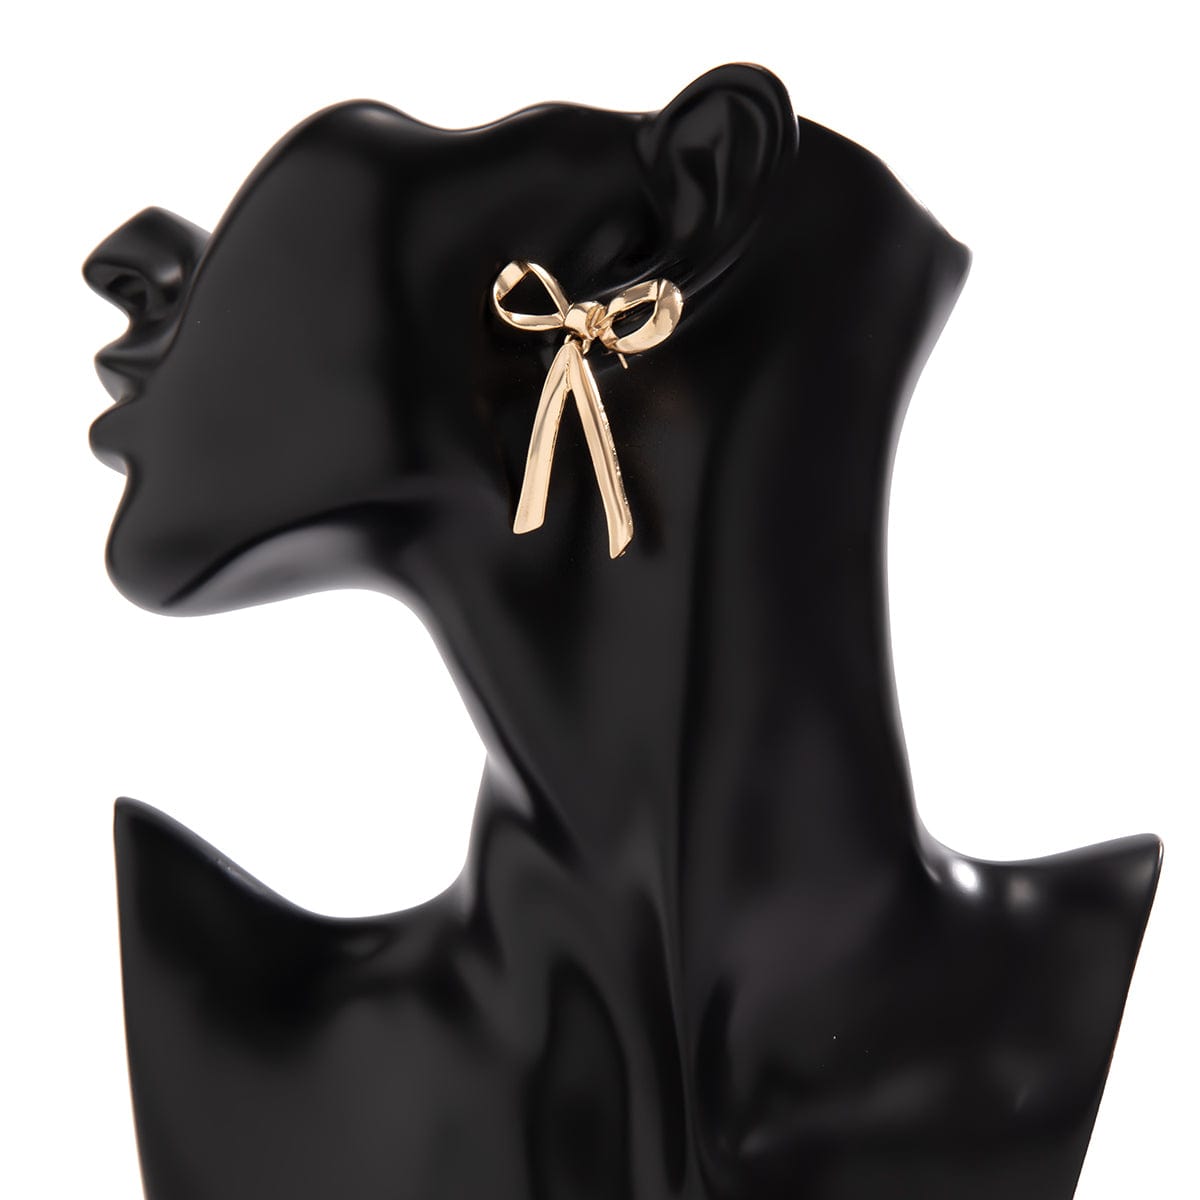 Trendy Gold Silver Plated Bowknot Earrings - ArtGalleryZen